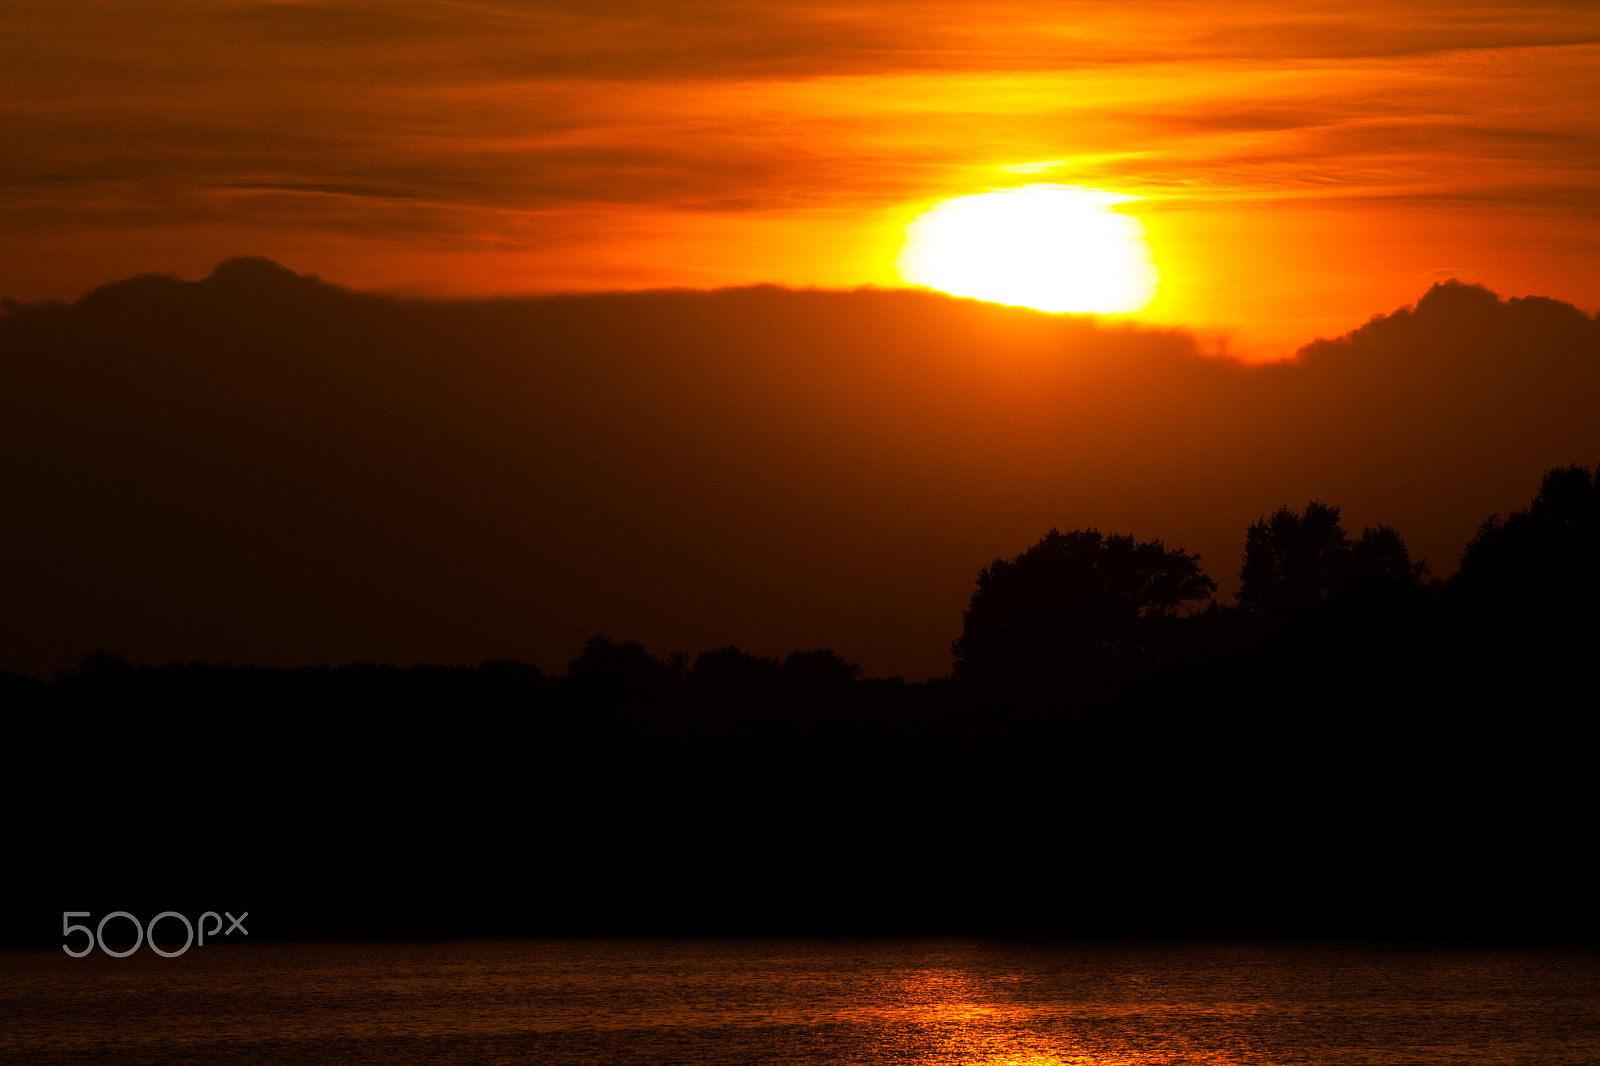 Nikon D90 sample photo. Sunset photography